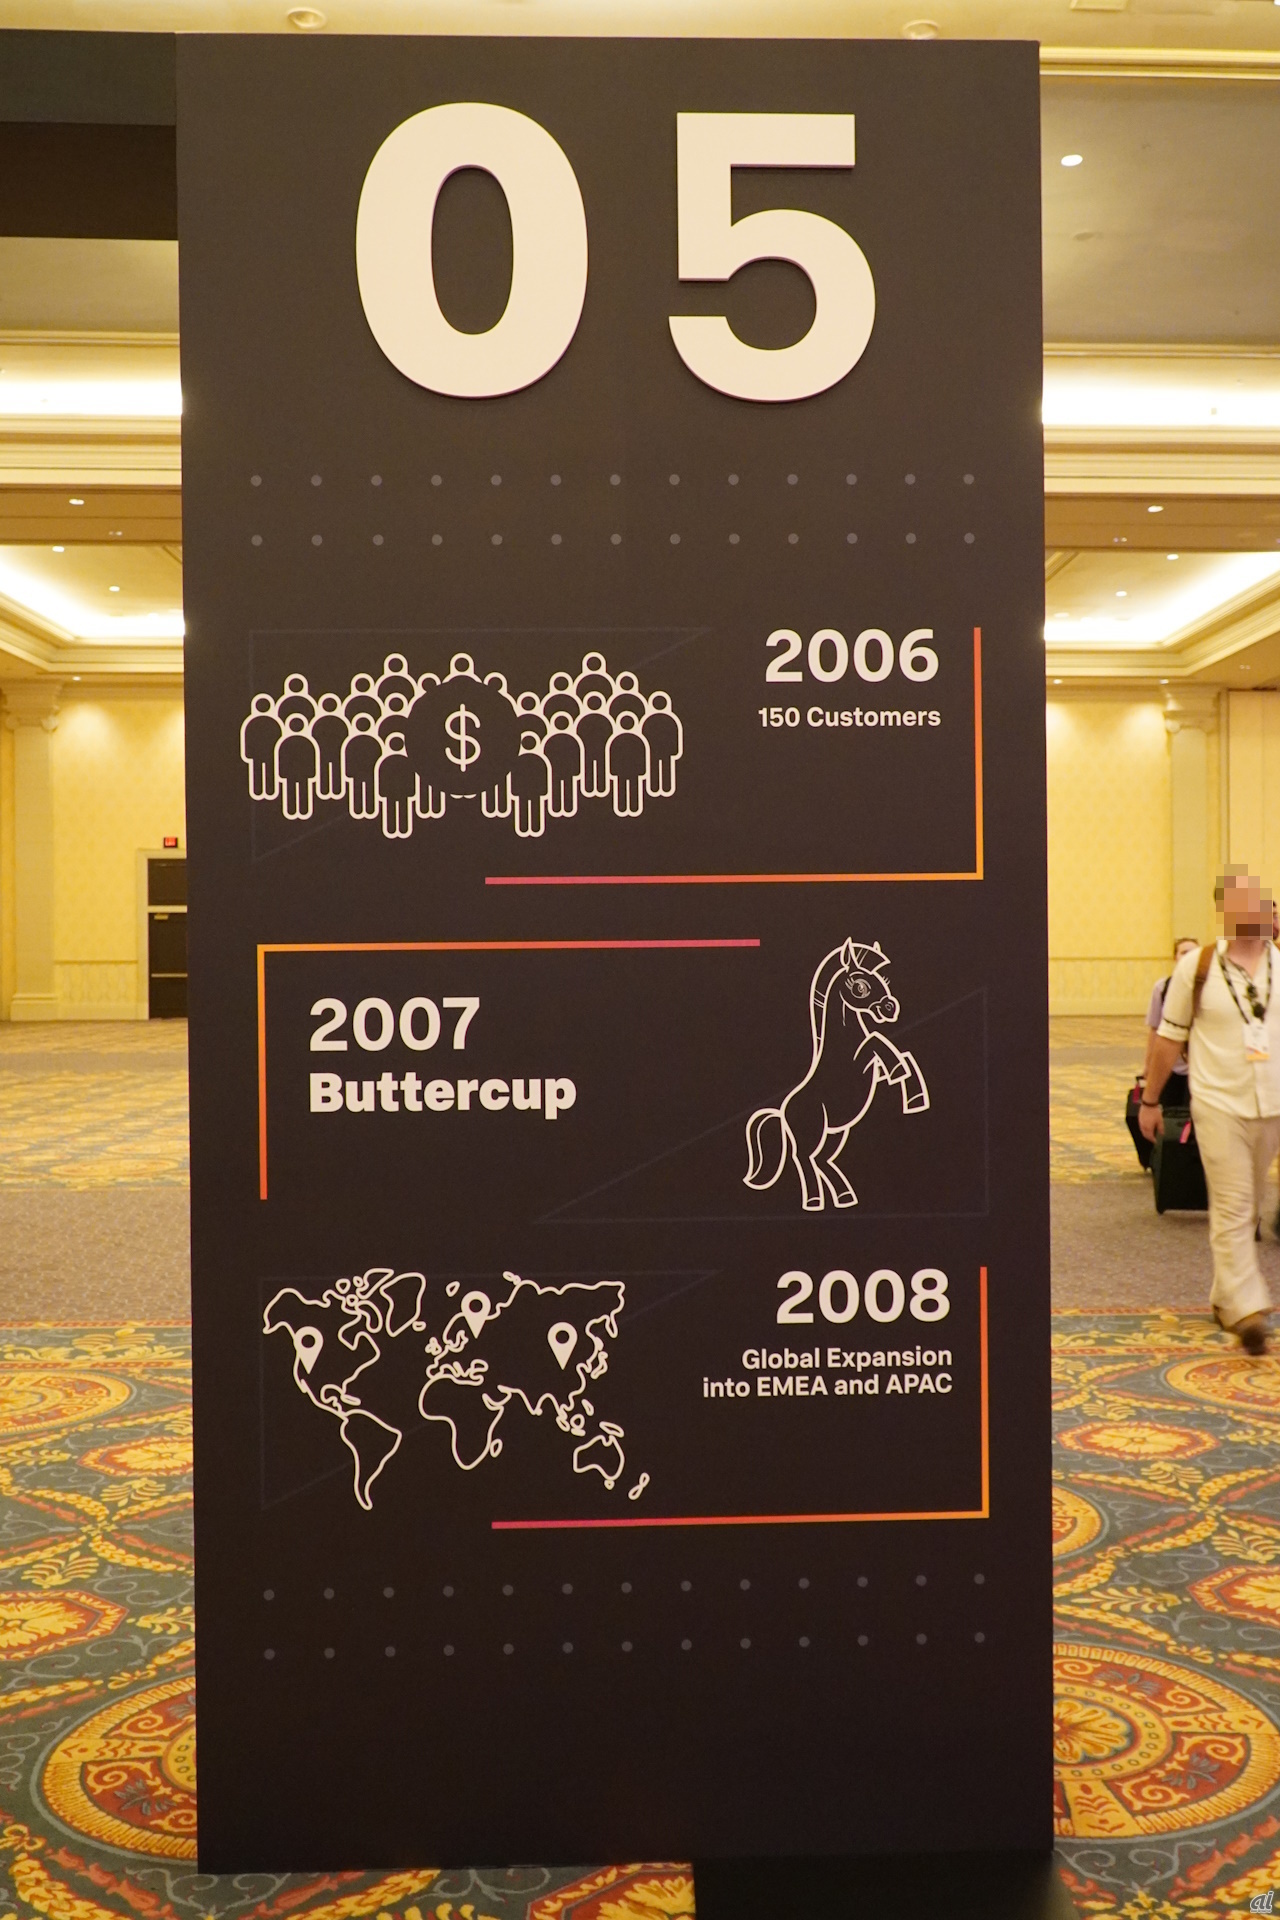 2006年には顧客数が150に達し。Buttercupが誕生したのは2007年。2008年に欧州・中東・アフリカ（EMEA）とアジア太平洋（APAC）にグローバル展開を始めた。
